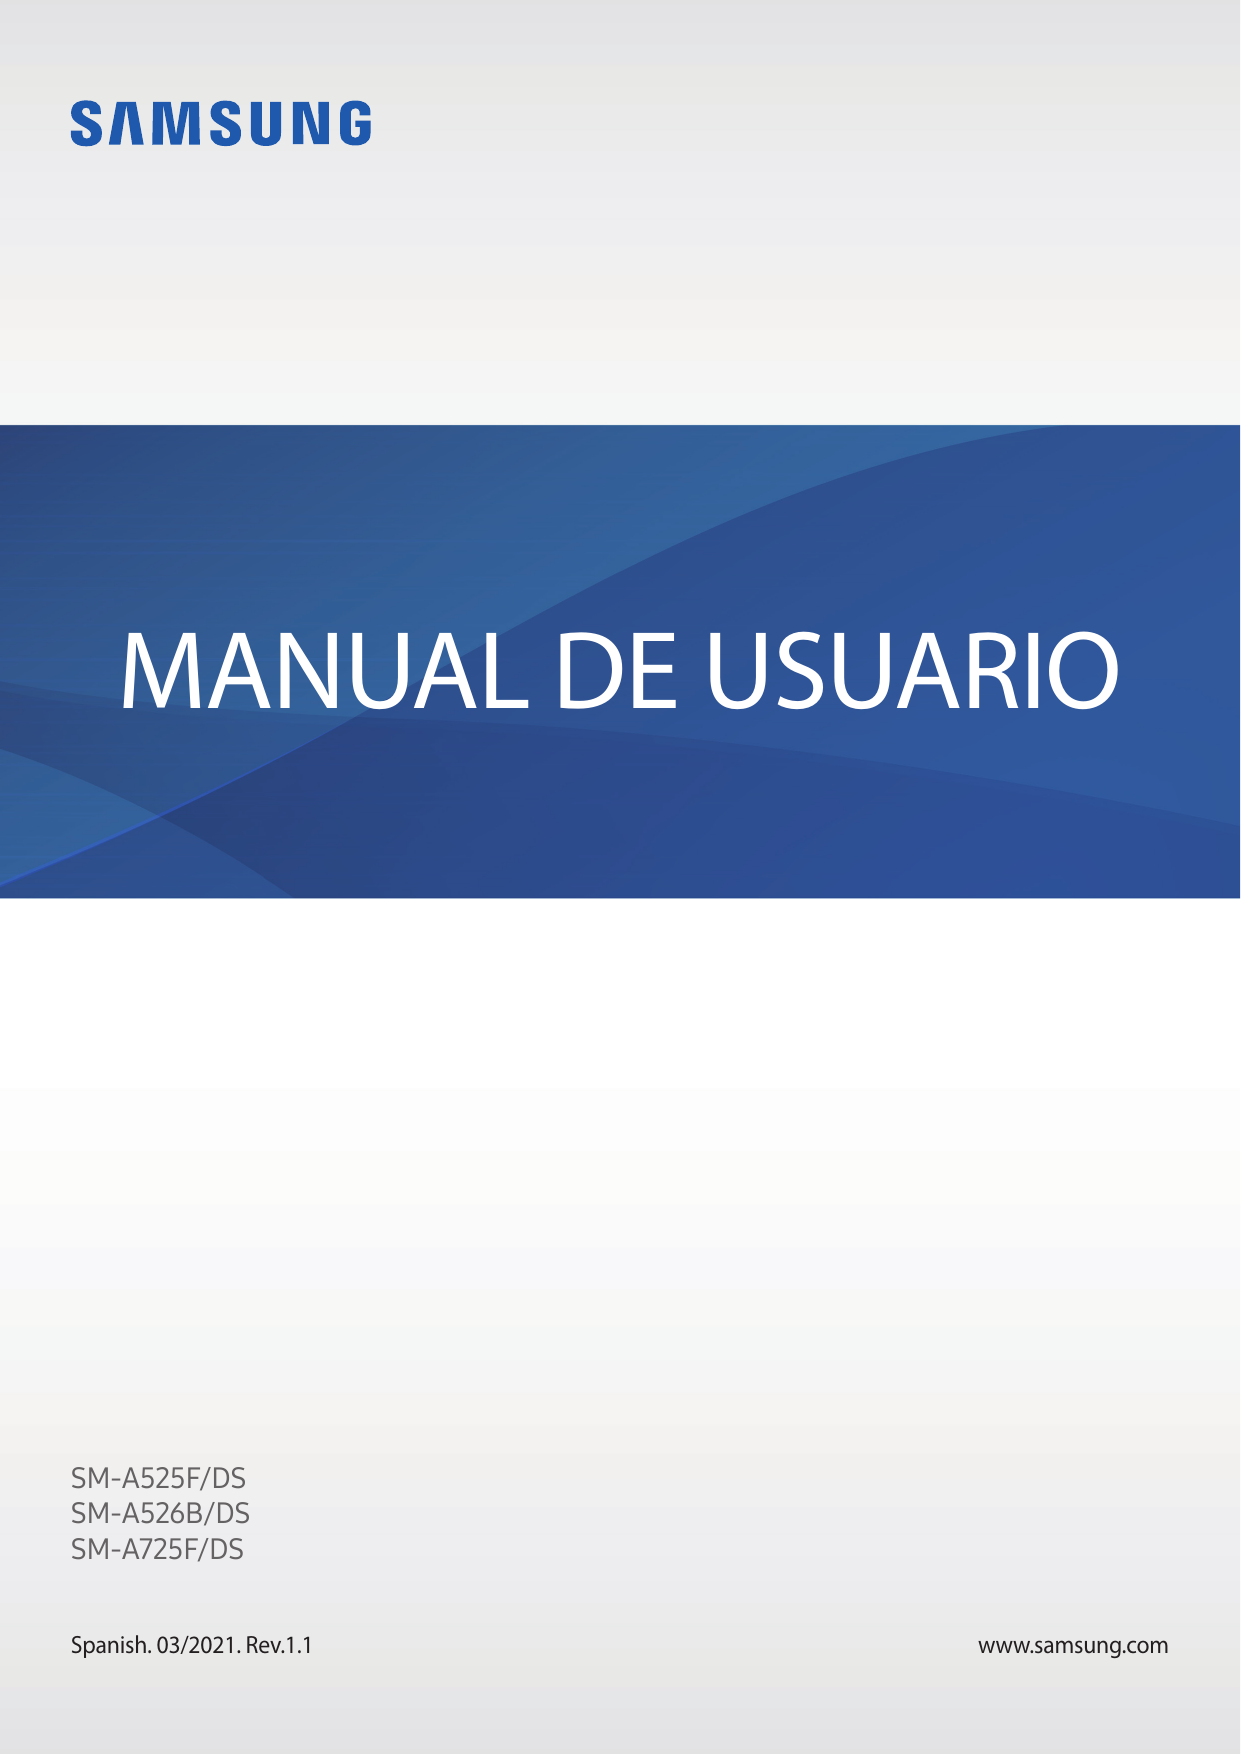 MANUAL DE USUARIOSM-A525F/DSSM-A526B/DSSM-A725F/DSSpanish. 03/2021. Rev.1.1www.samsung.com